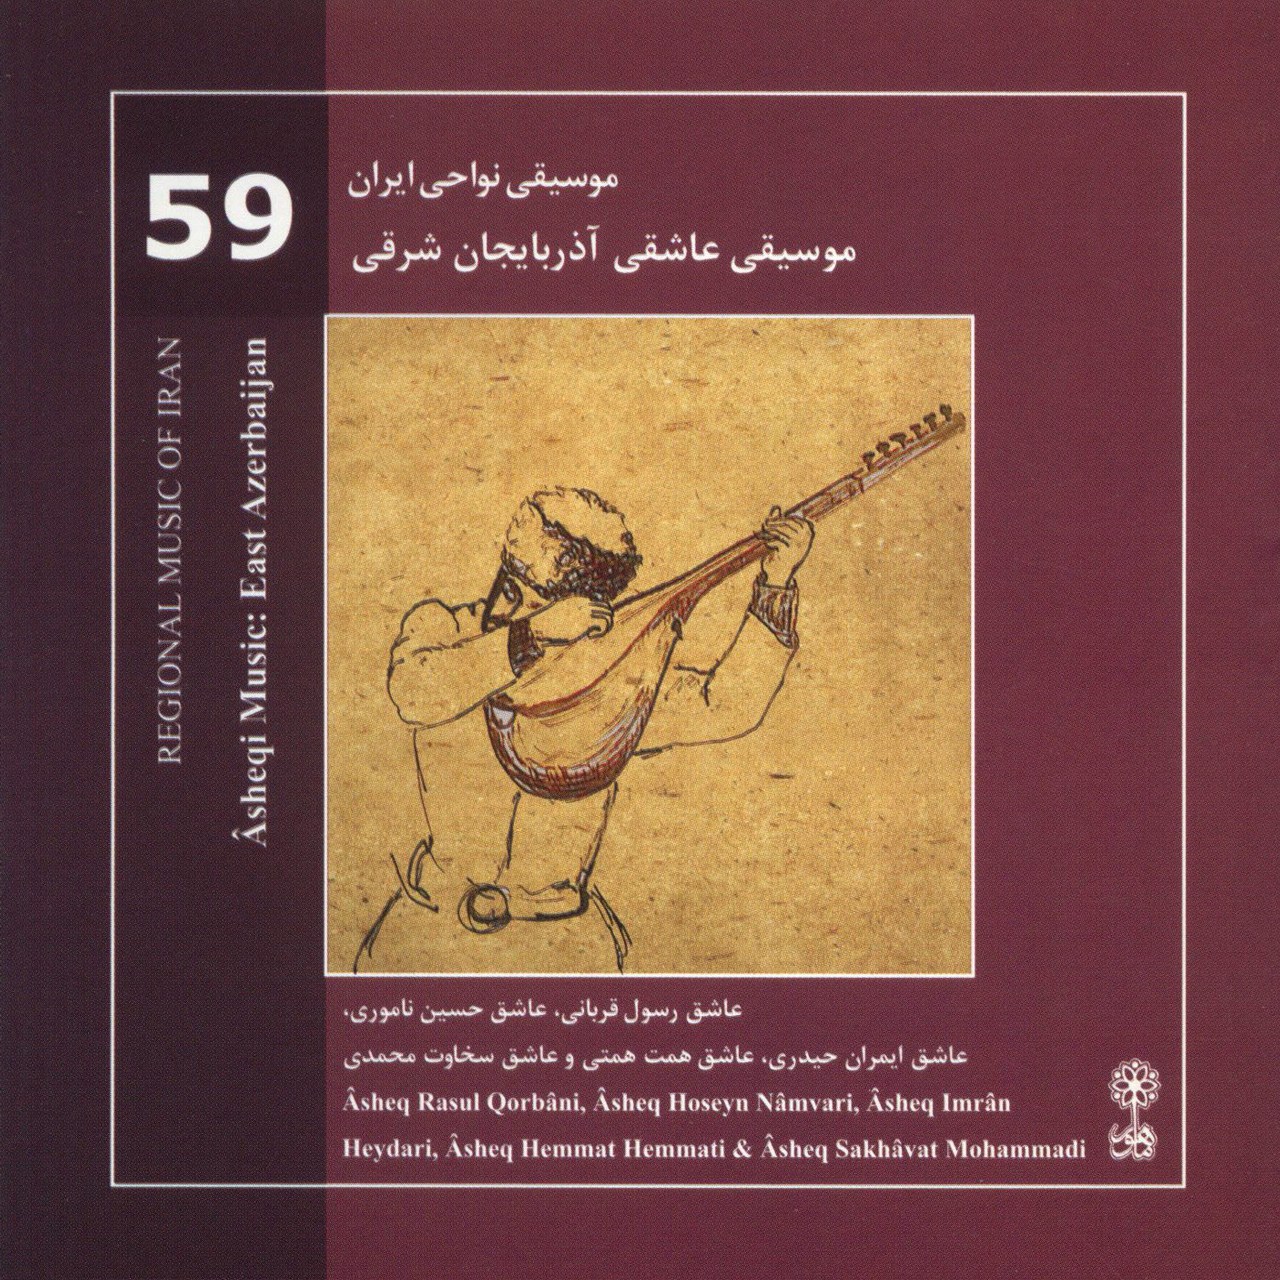 آلبوم موسیقی عاشقی آذربایجان شرقی اثر محمدرضا درویشی